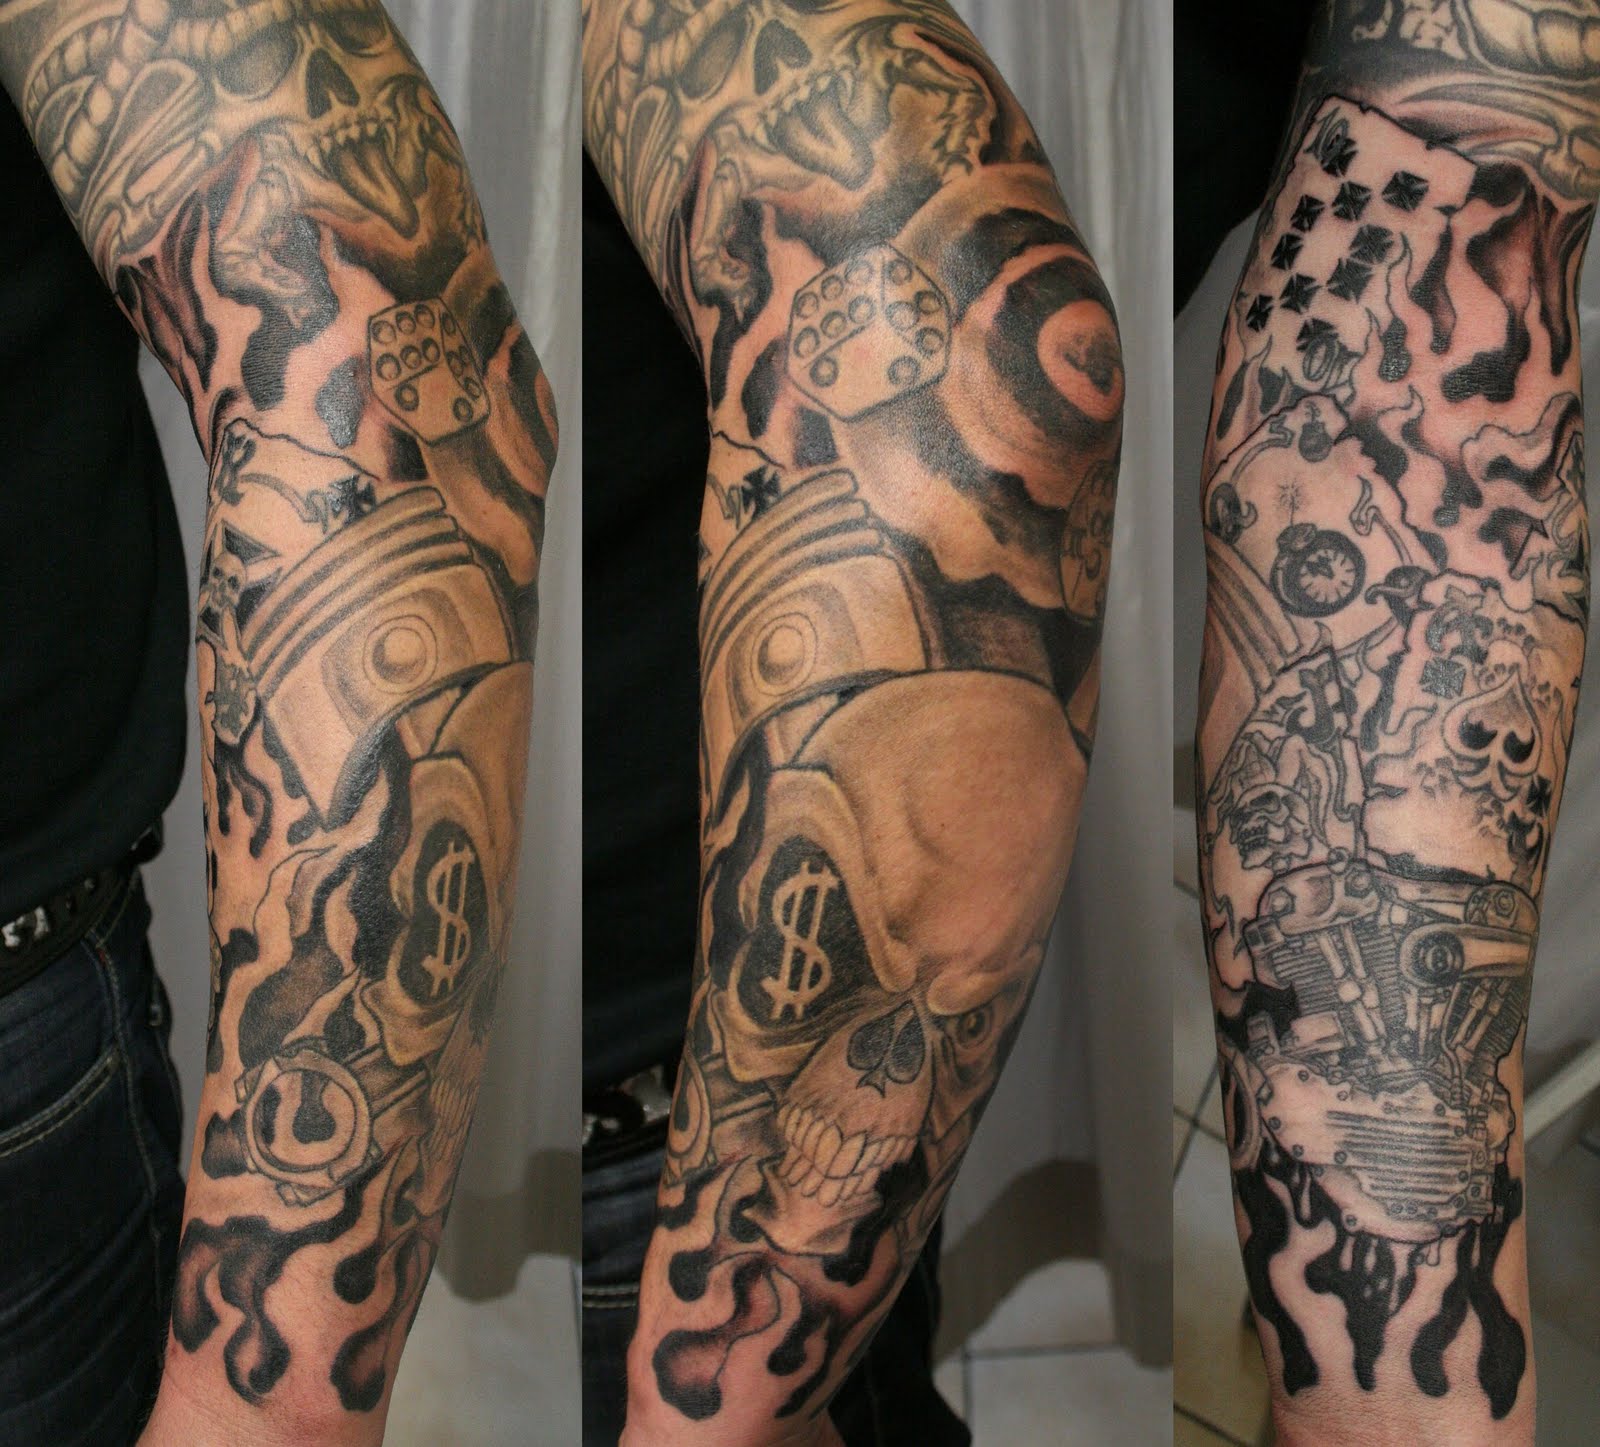 tattoo sleeve designs